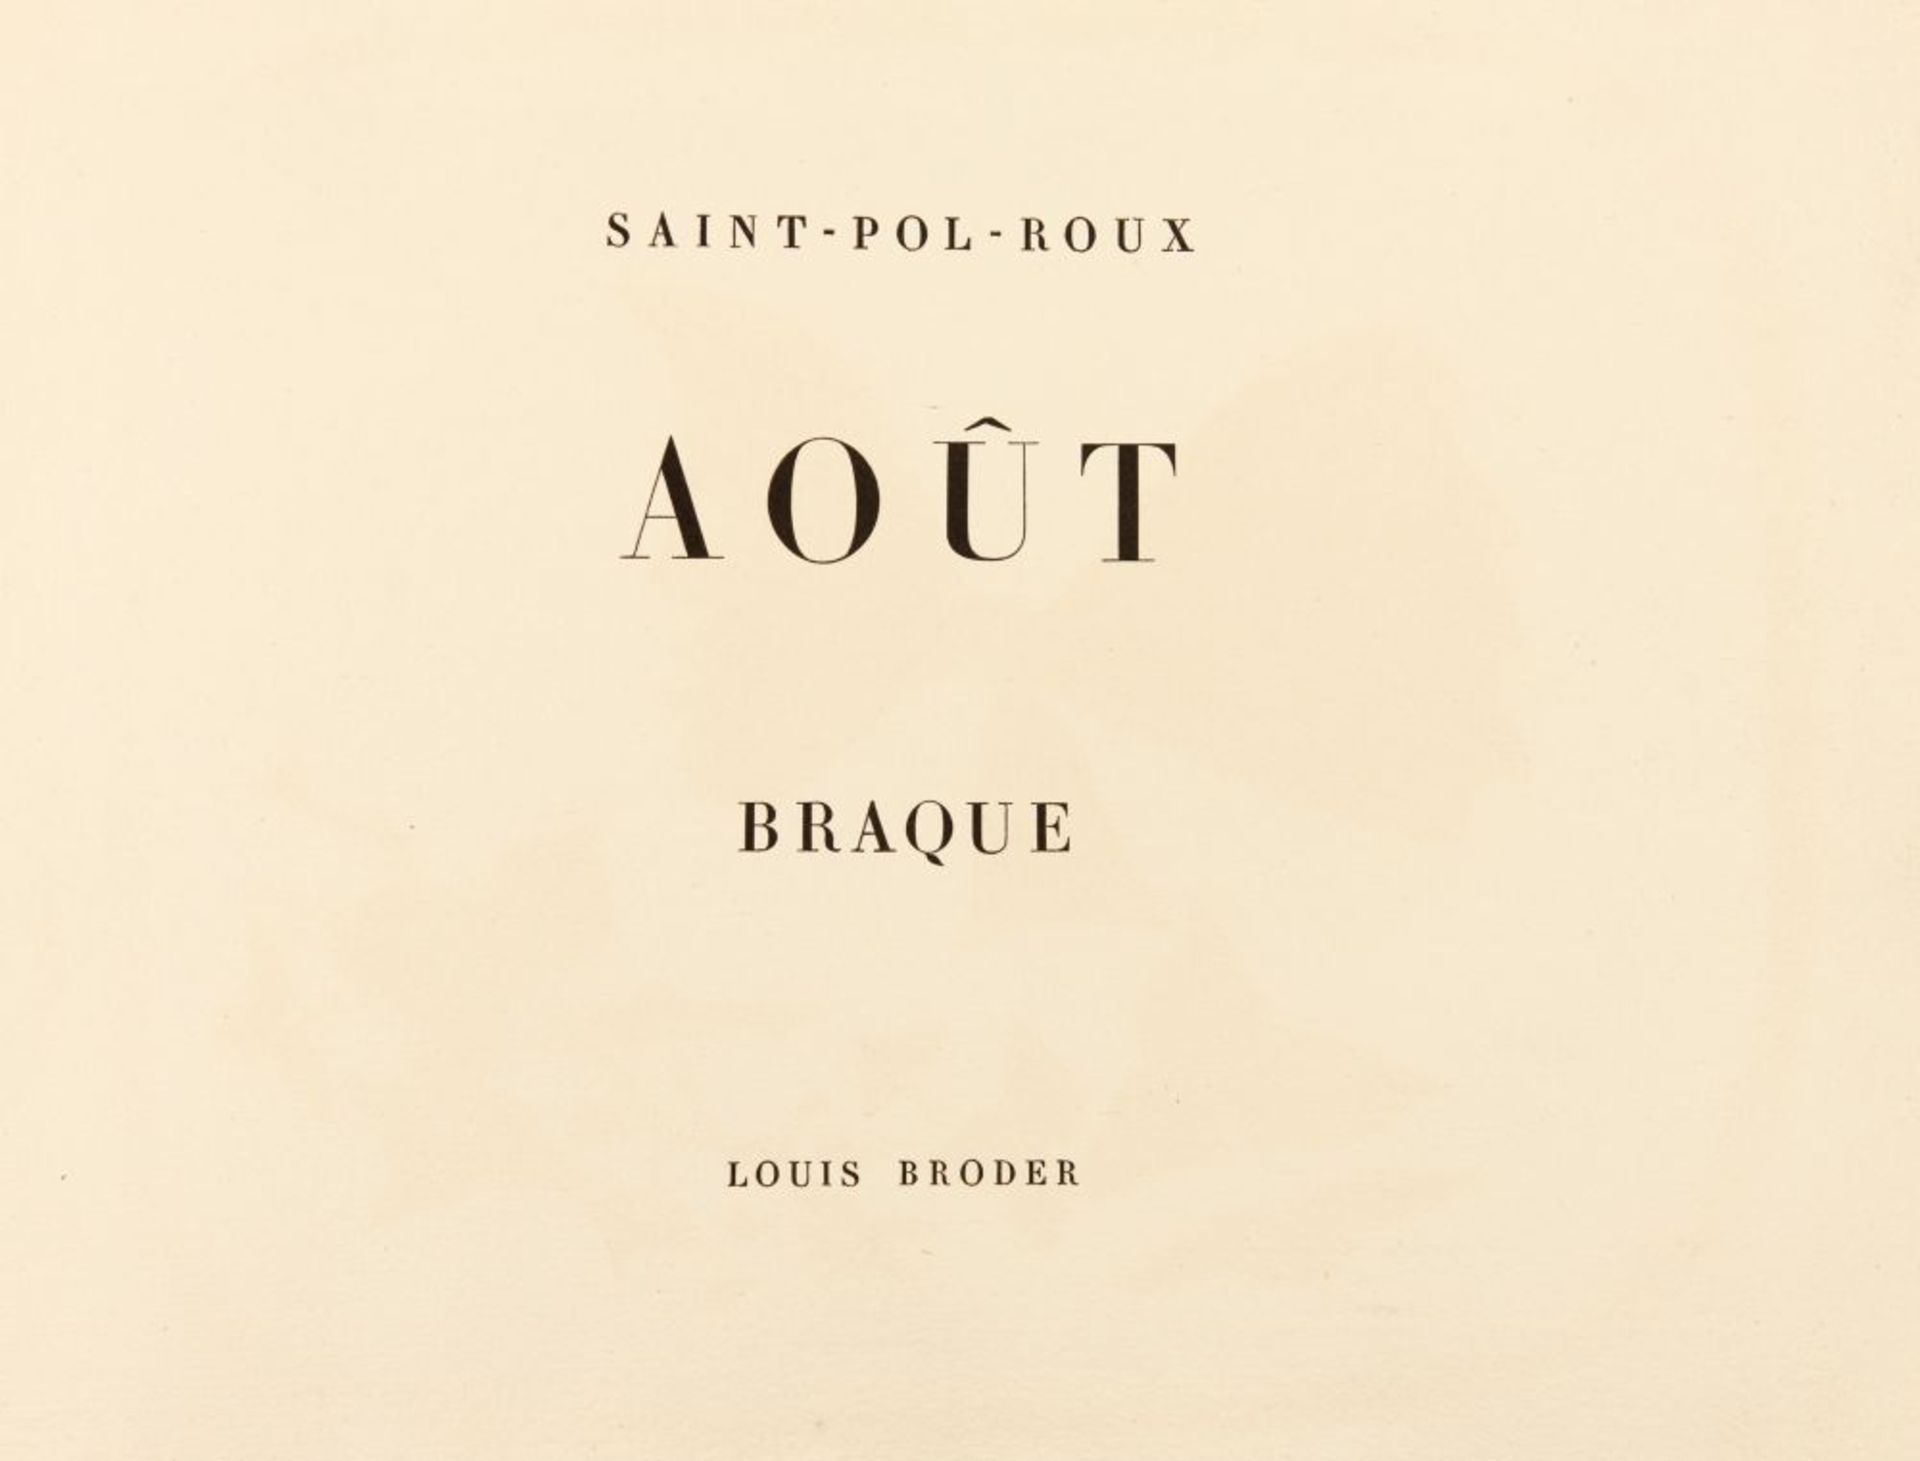 Saint-Pol-Roux / G. Braque, Août. Paris 1958. - Ex. 2/140 (ohne die Suite). - Image 2 of 3